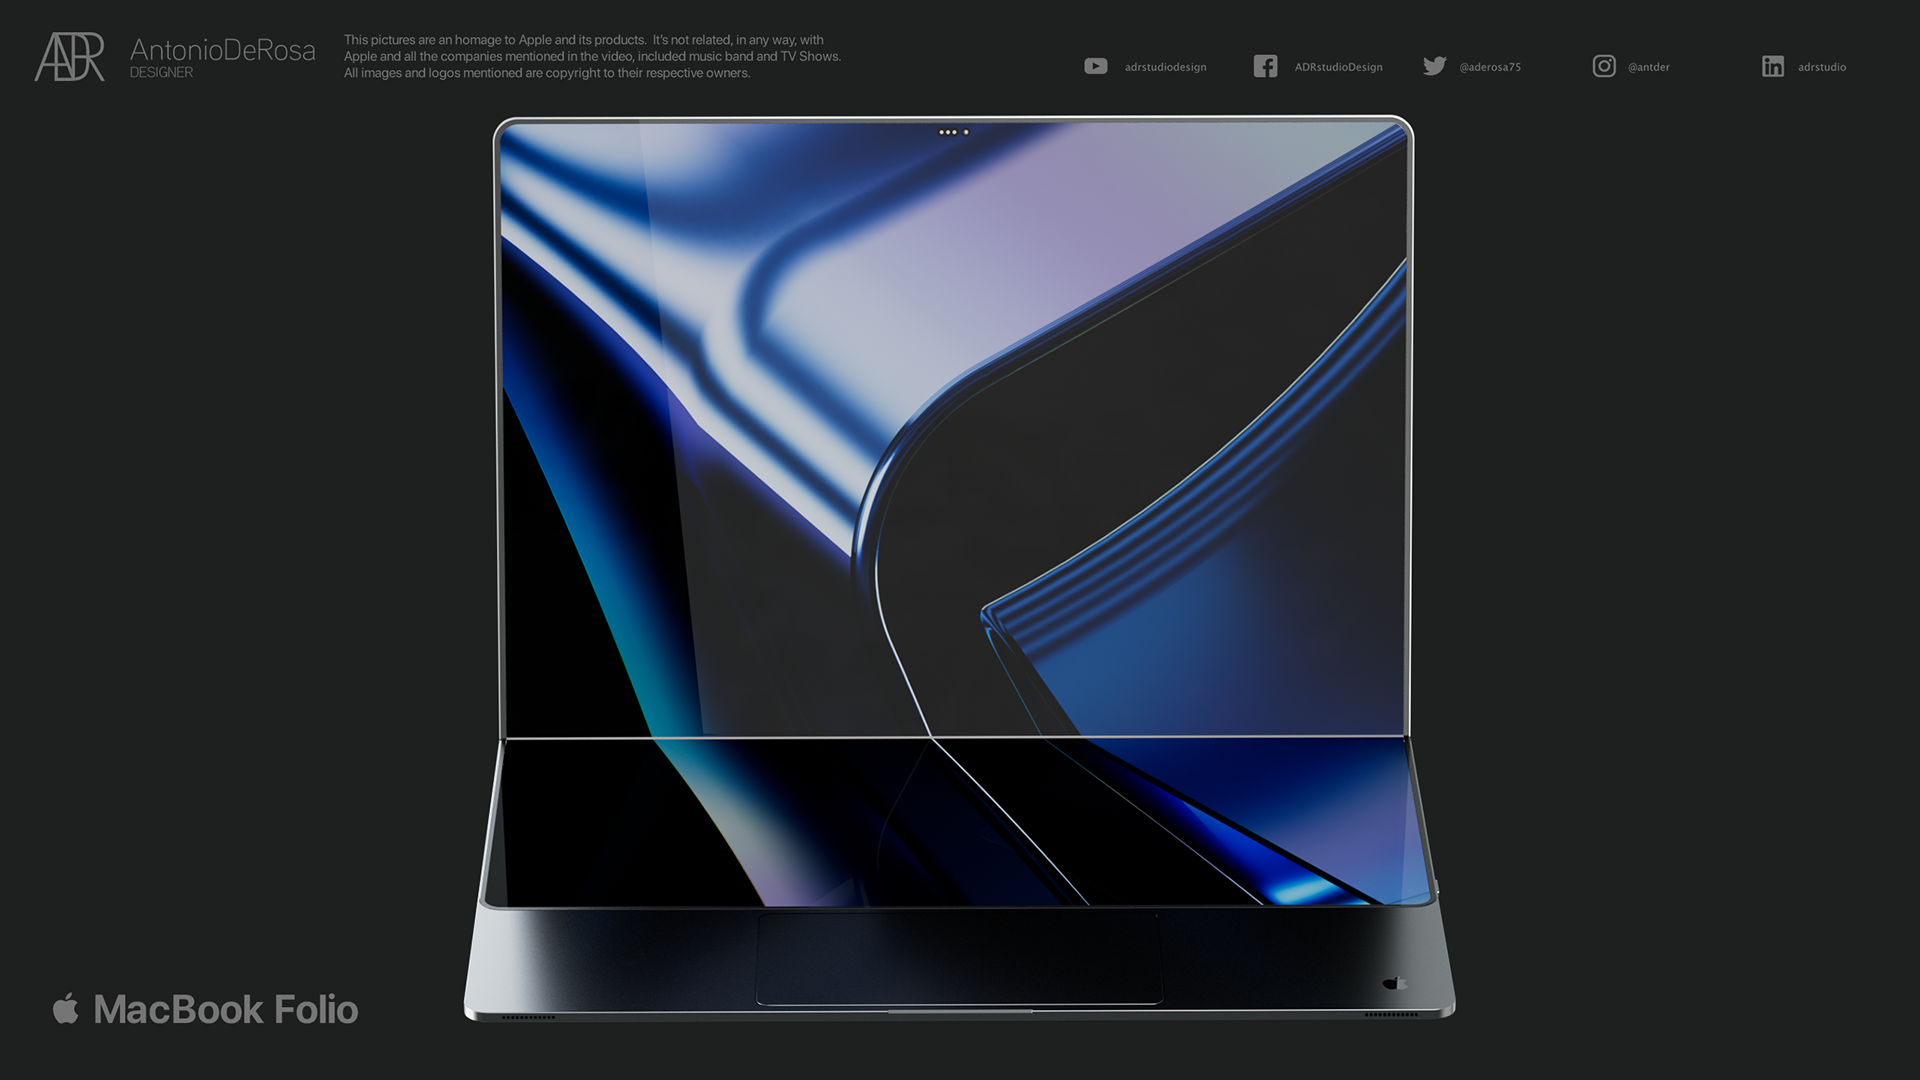 Apple parece estar a desenvolver um Mac com ecrã dobrável post image